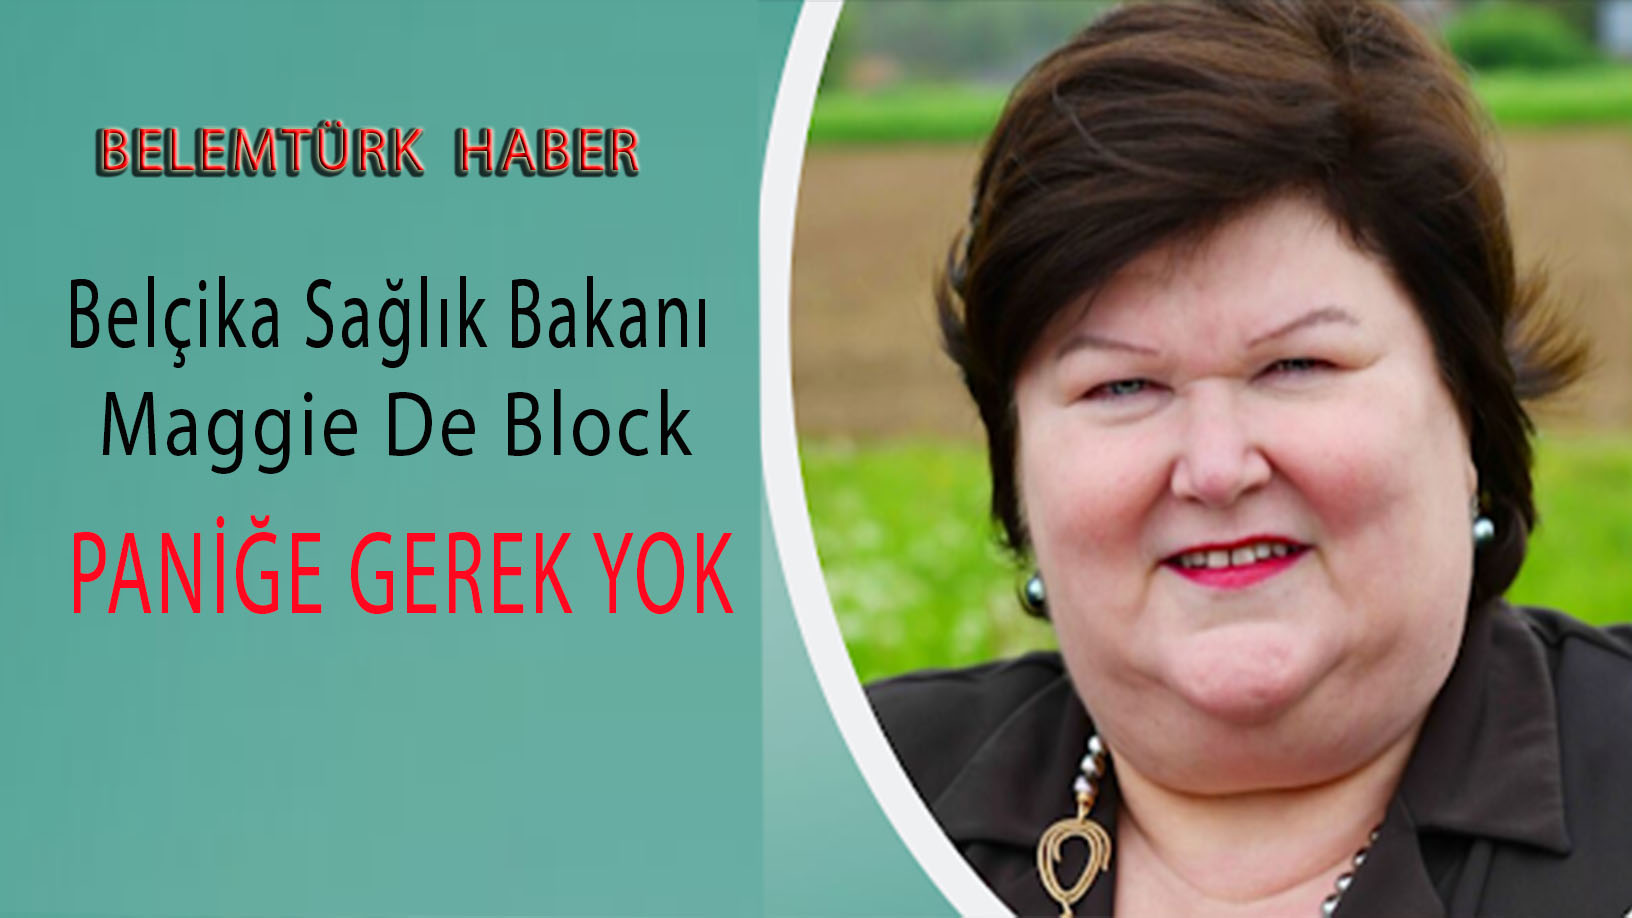 Belçika Sağlık Bakanı Maggie De Block, “Paniğe gerek yok”